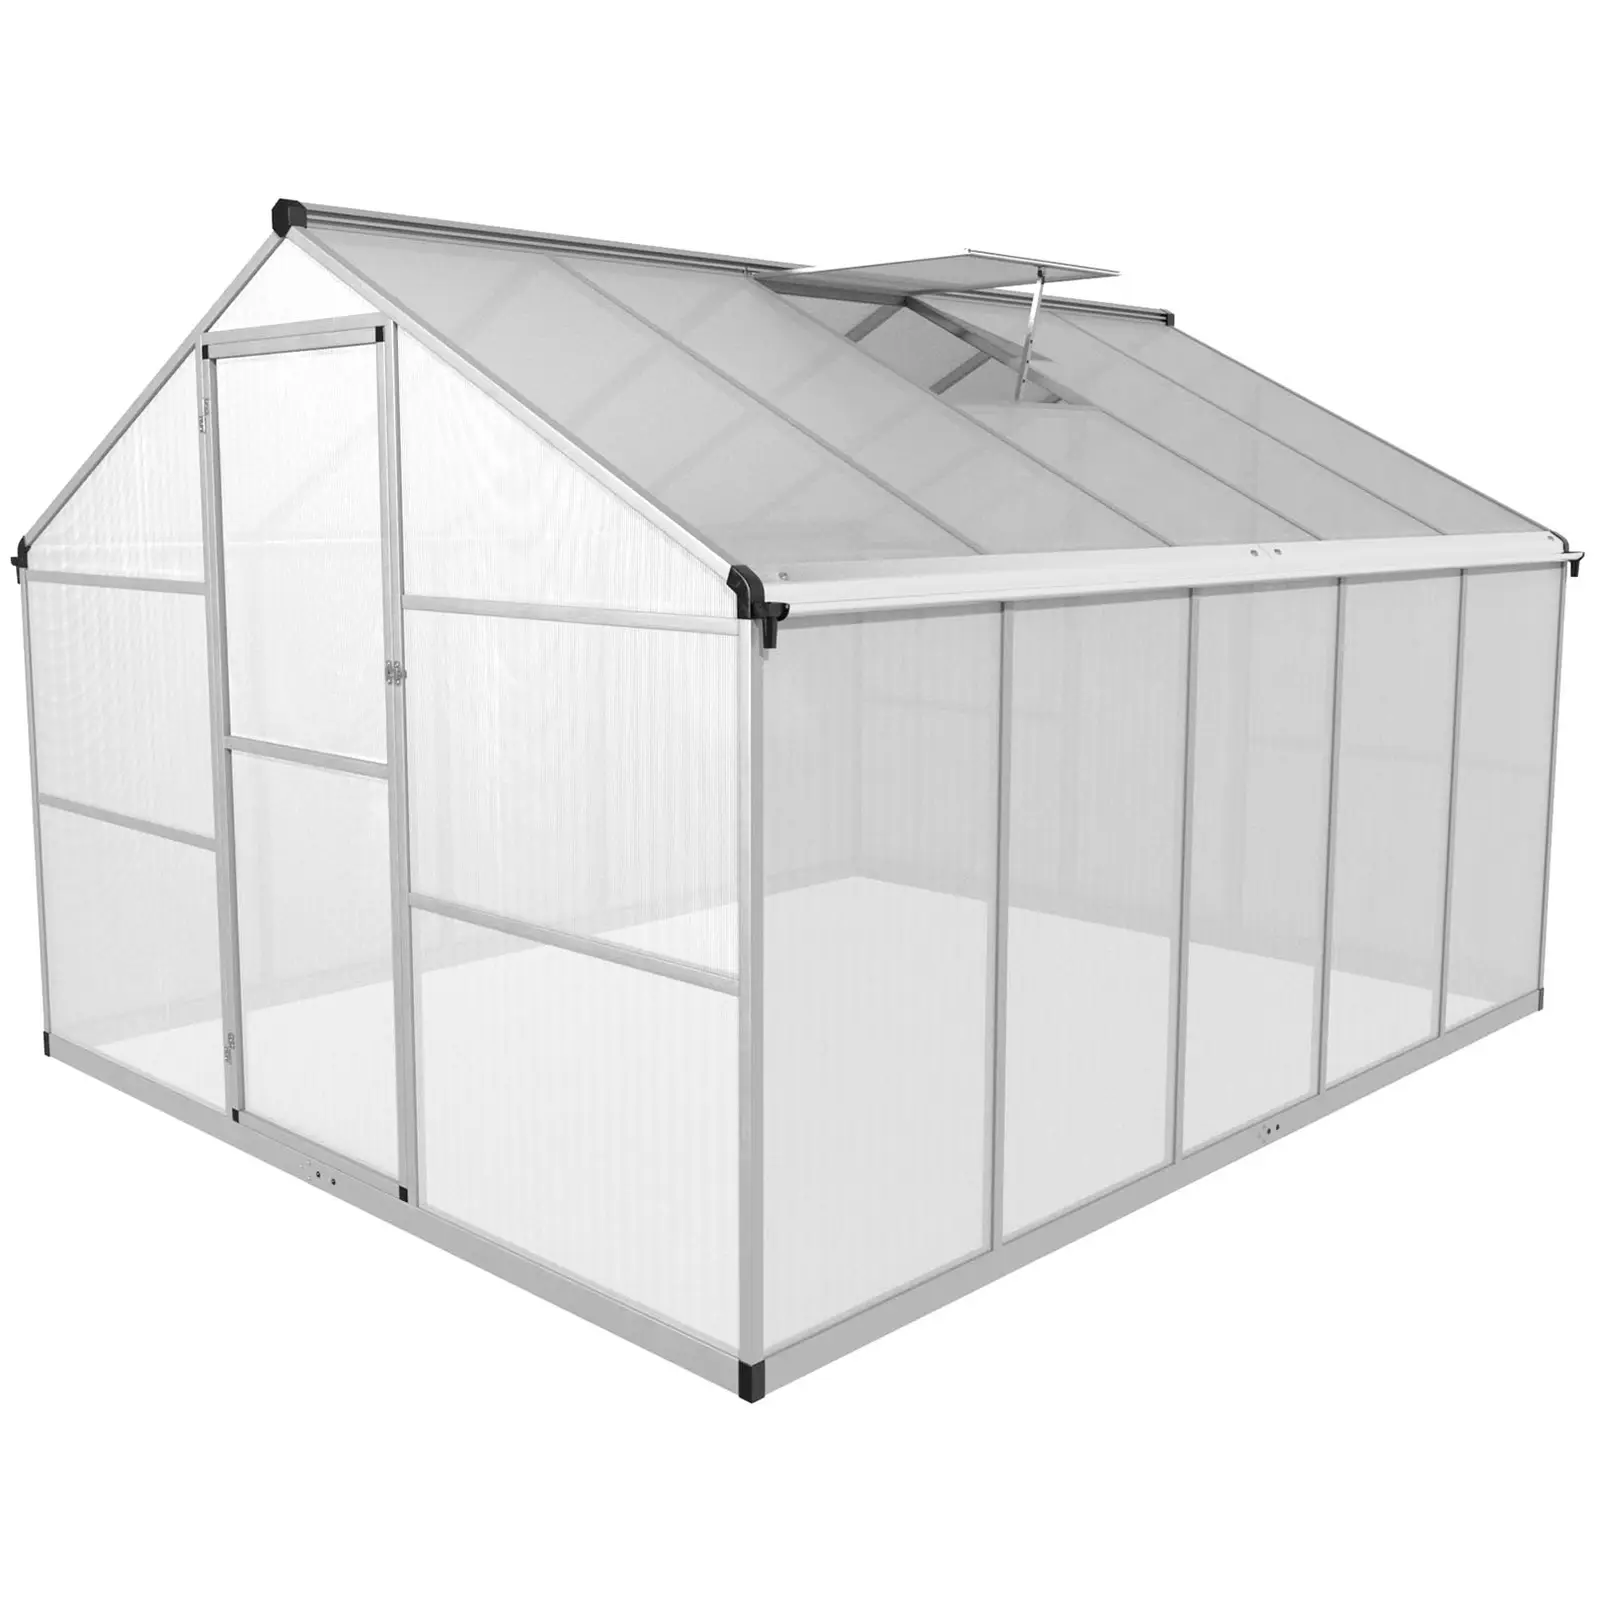 Greenhouse - 310 x 250 x 195 cm - polycarbonate + aluminium